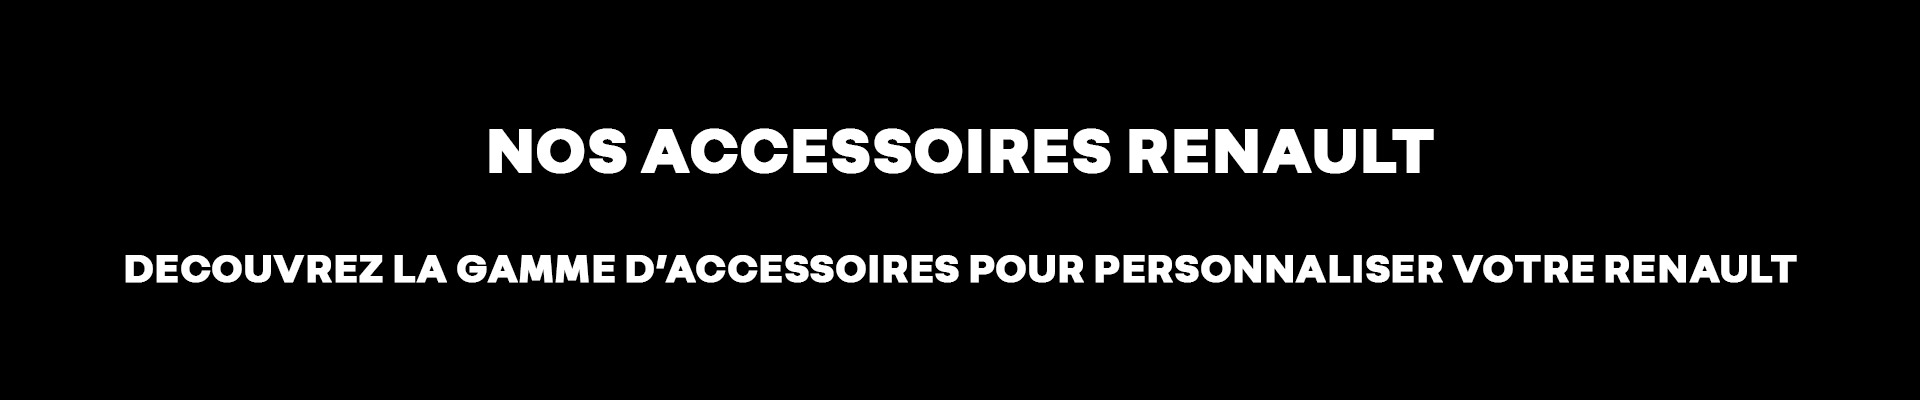 Accessoires Renault Rennes